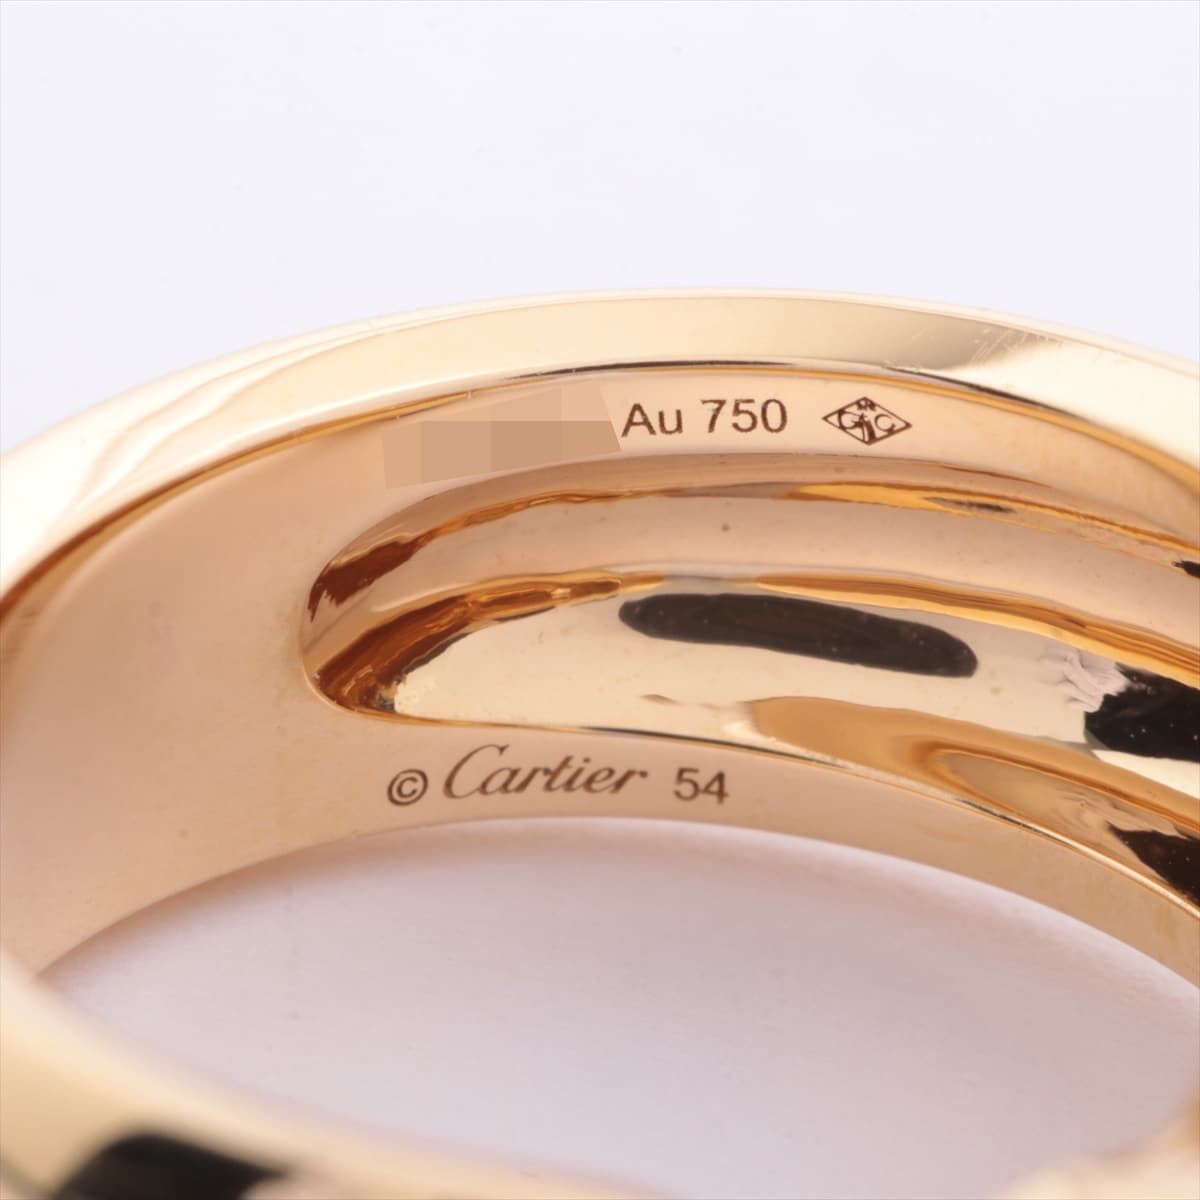 Cartier Panthère Doo Cartier Tsavorite Onyx rings 750(YG) 16.5g 54